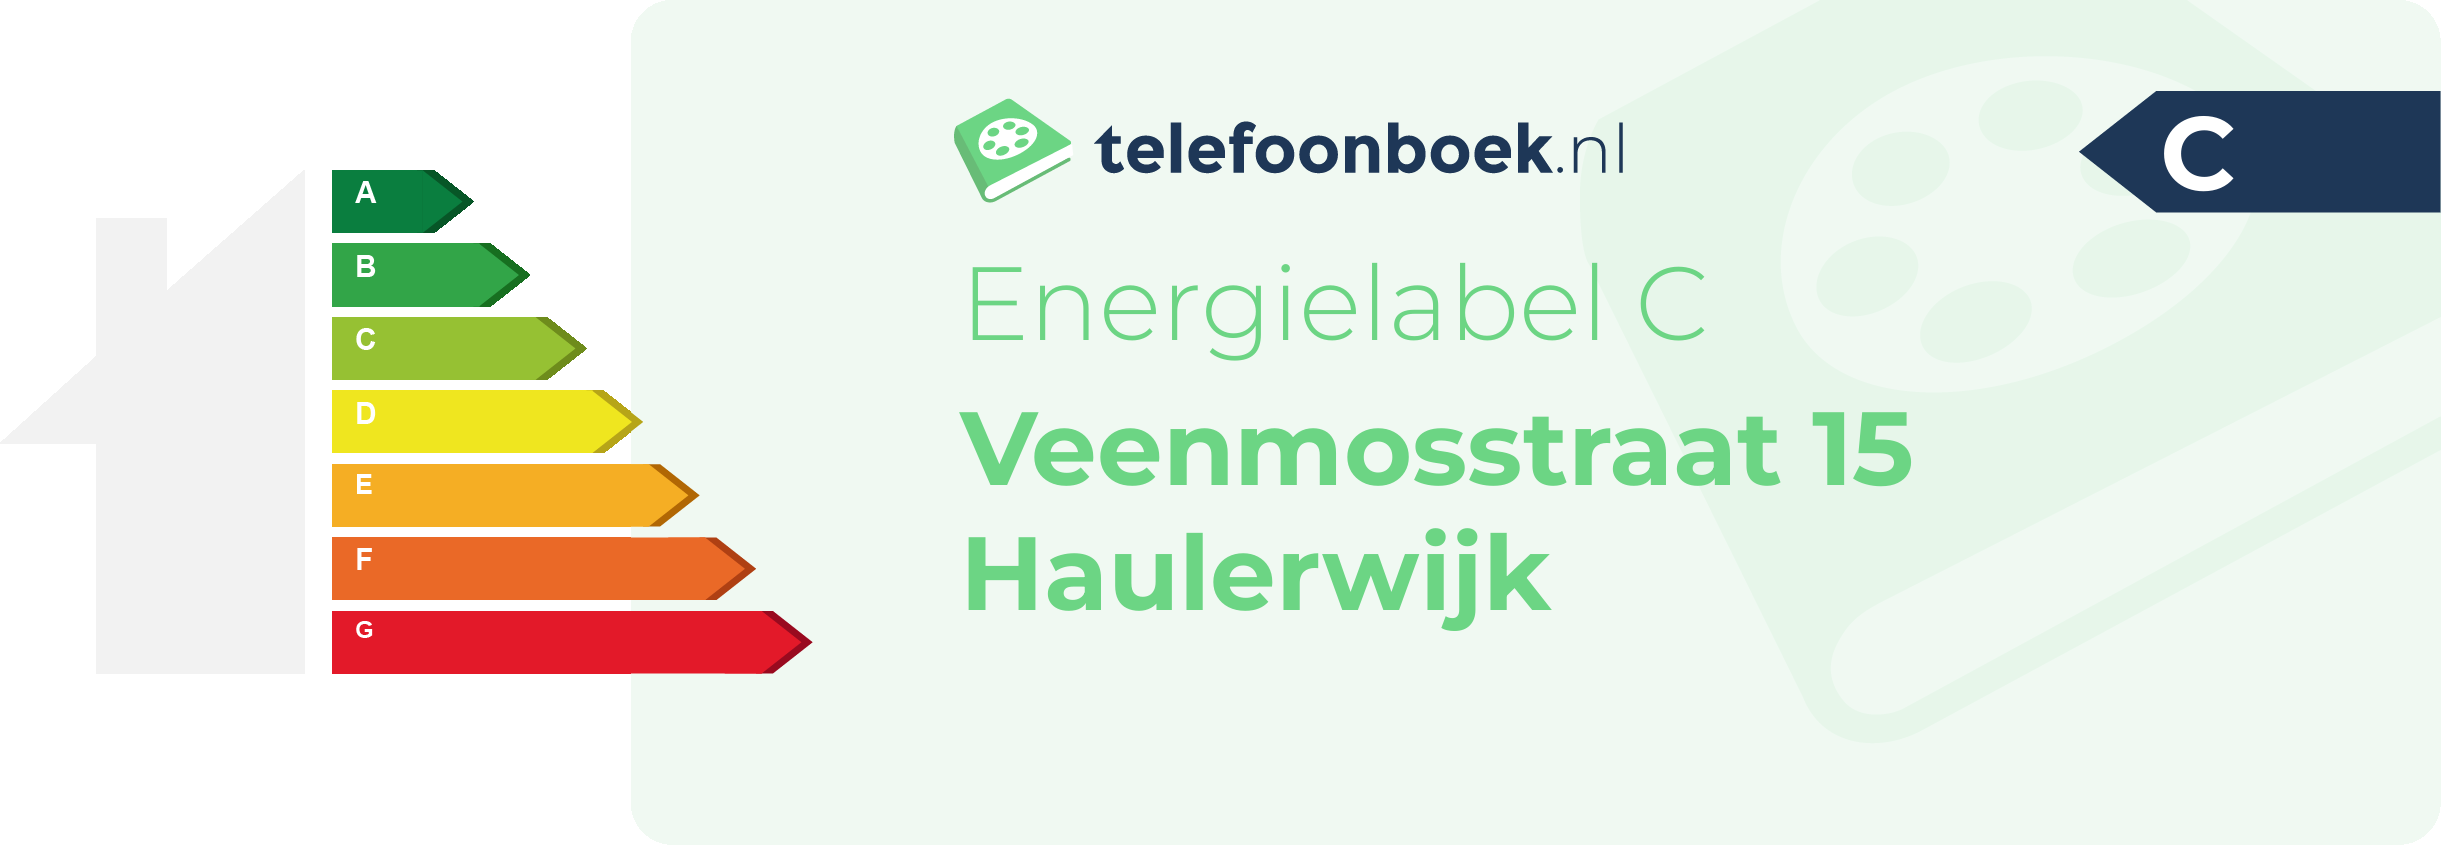 Energielabel Veenmosstraat 15 Haulerwijk